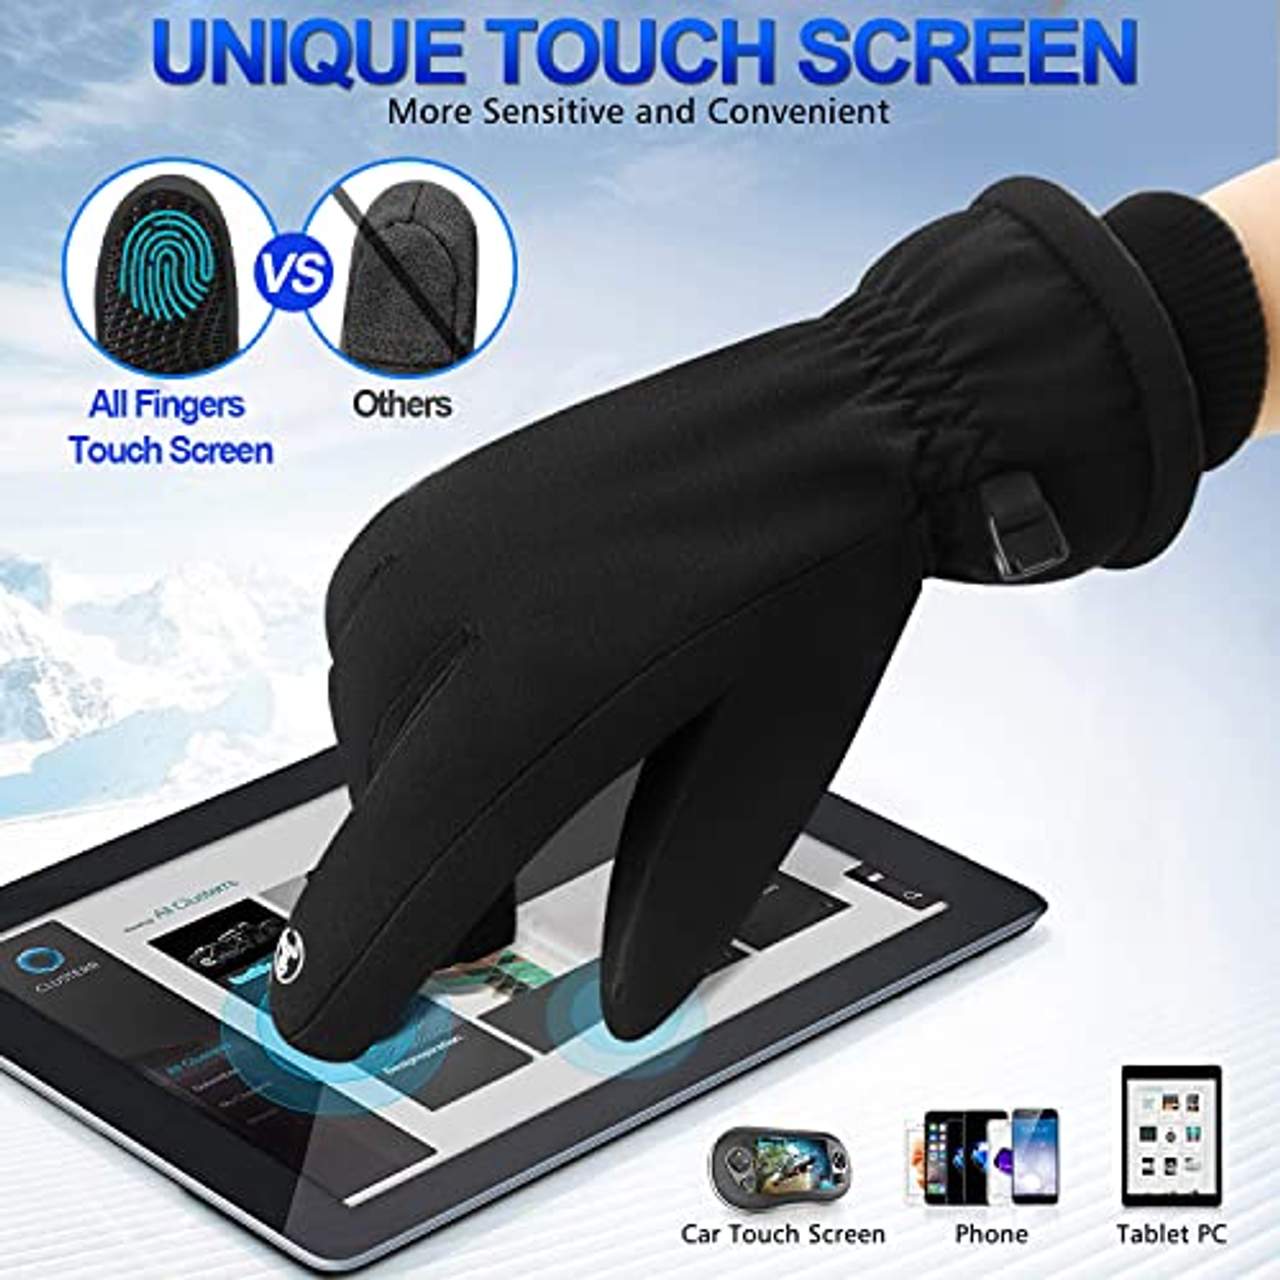 Songwin wasserdichte Winterhandschuhe 3M Thinsulate Warme Touchscreen Handschuhe